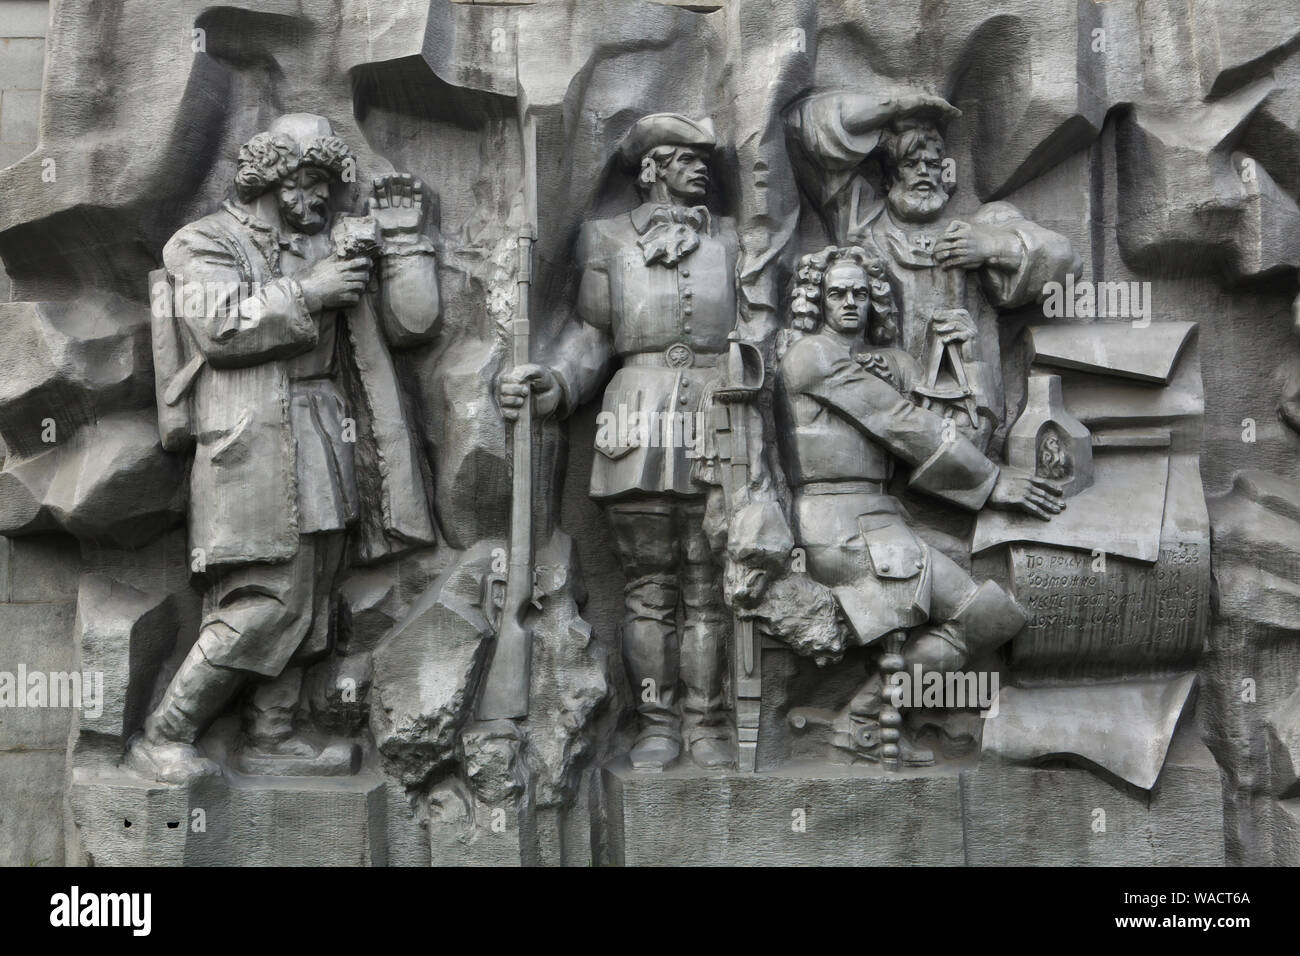 Homme d'État russe Vasily Tatishchev représenté dans la grande échelle de secours métal intitulée "La naissance de la ville' à Iekaterinbourg, Russie. Vasily Tatishchev est considéré comme l'un des fondateurs d'Ekaterinbourg en 1723. Le béton haut relief consacré à l'histoire de la ville a été conçue par le sculpteur russe Piotr Sharlaimov et dévoilé en 1923 pour la première fois sur le barrage de l'étang de la ville (Plotinka). En 1960, le redressement a été enlevé et détruit. Il a été reconstruit et inauguré de nouveau dans les années 80. En 2017, l'allégement en béton a été remplacé par l'autre en métal. La personne à la gauche est pro Banque D'Images